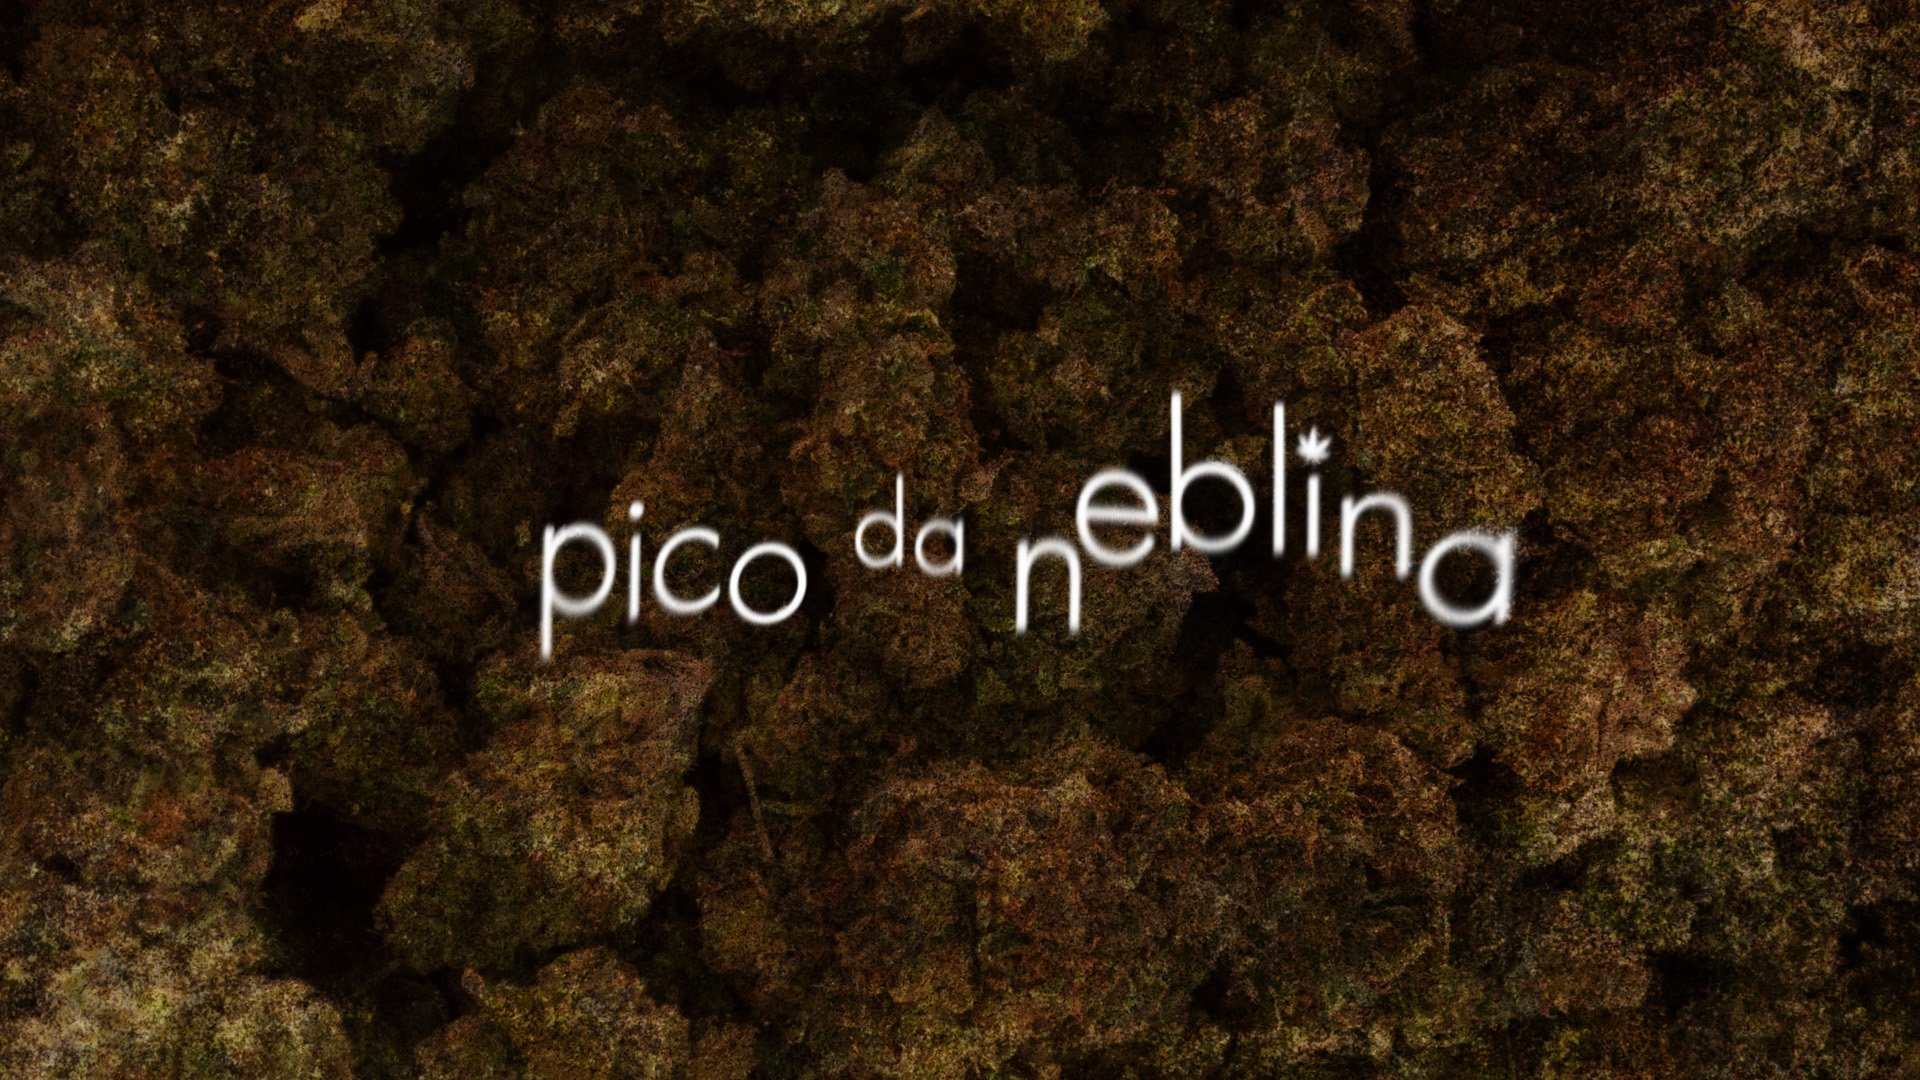 Série brasileira da HBO sobre legalização da maconha estreia nova